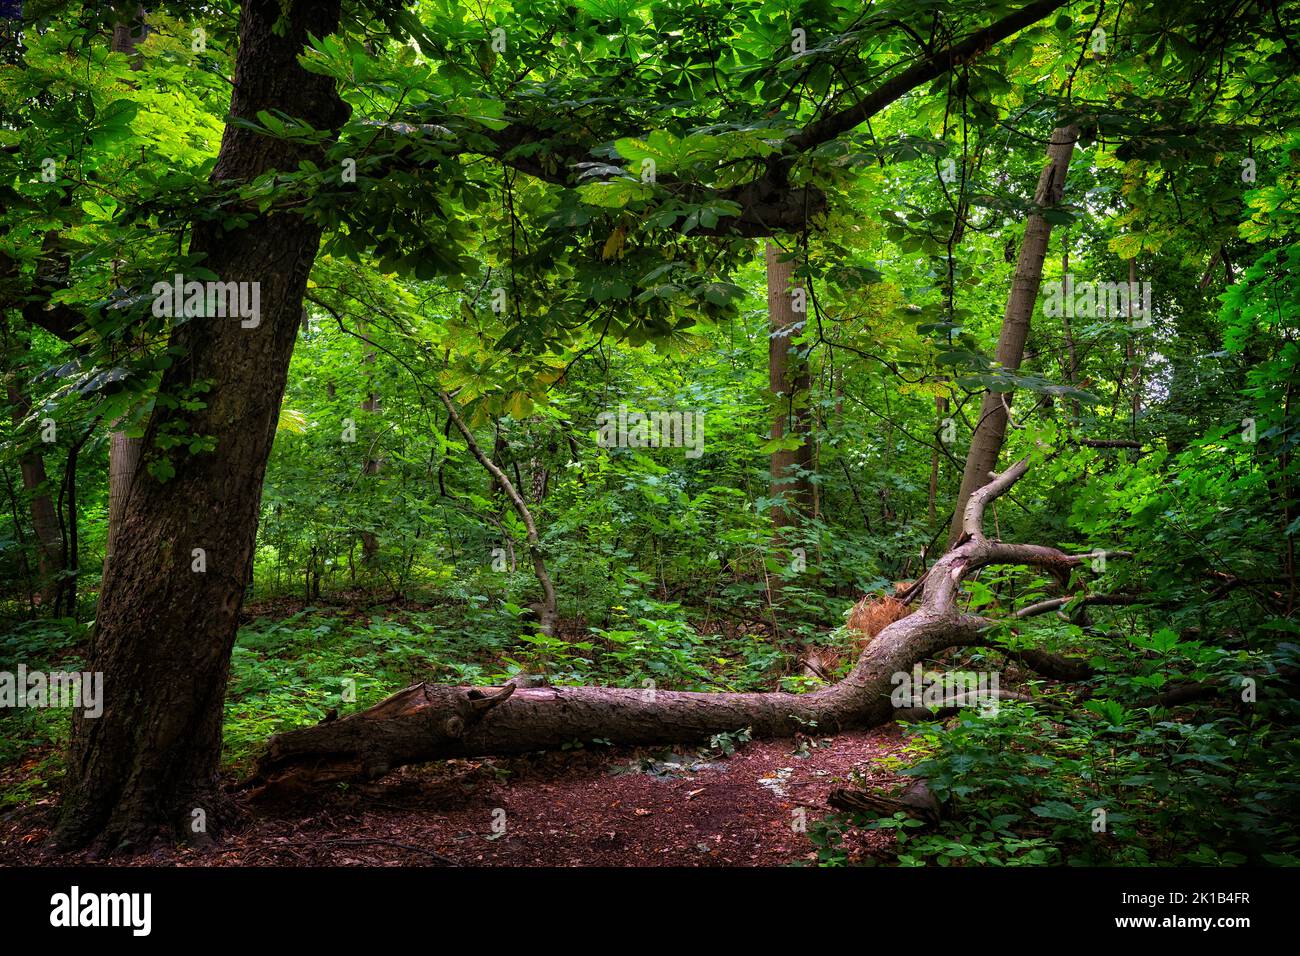 Foresta decidua bellissimo scenario, doppio tronco albero con uno caduto a terra e verde vibrante fogliame. Foresta temperata nella regione di Masovia Foto Stock